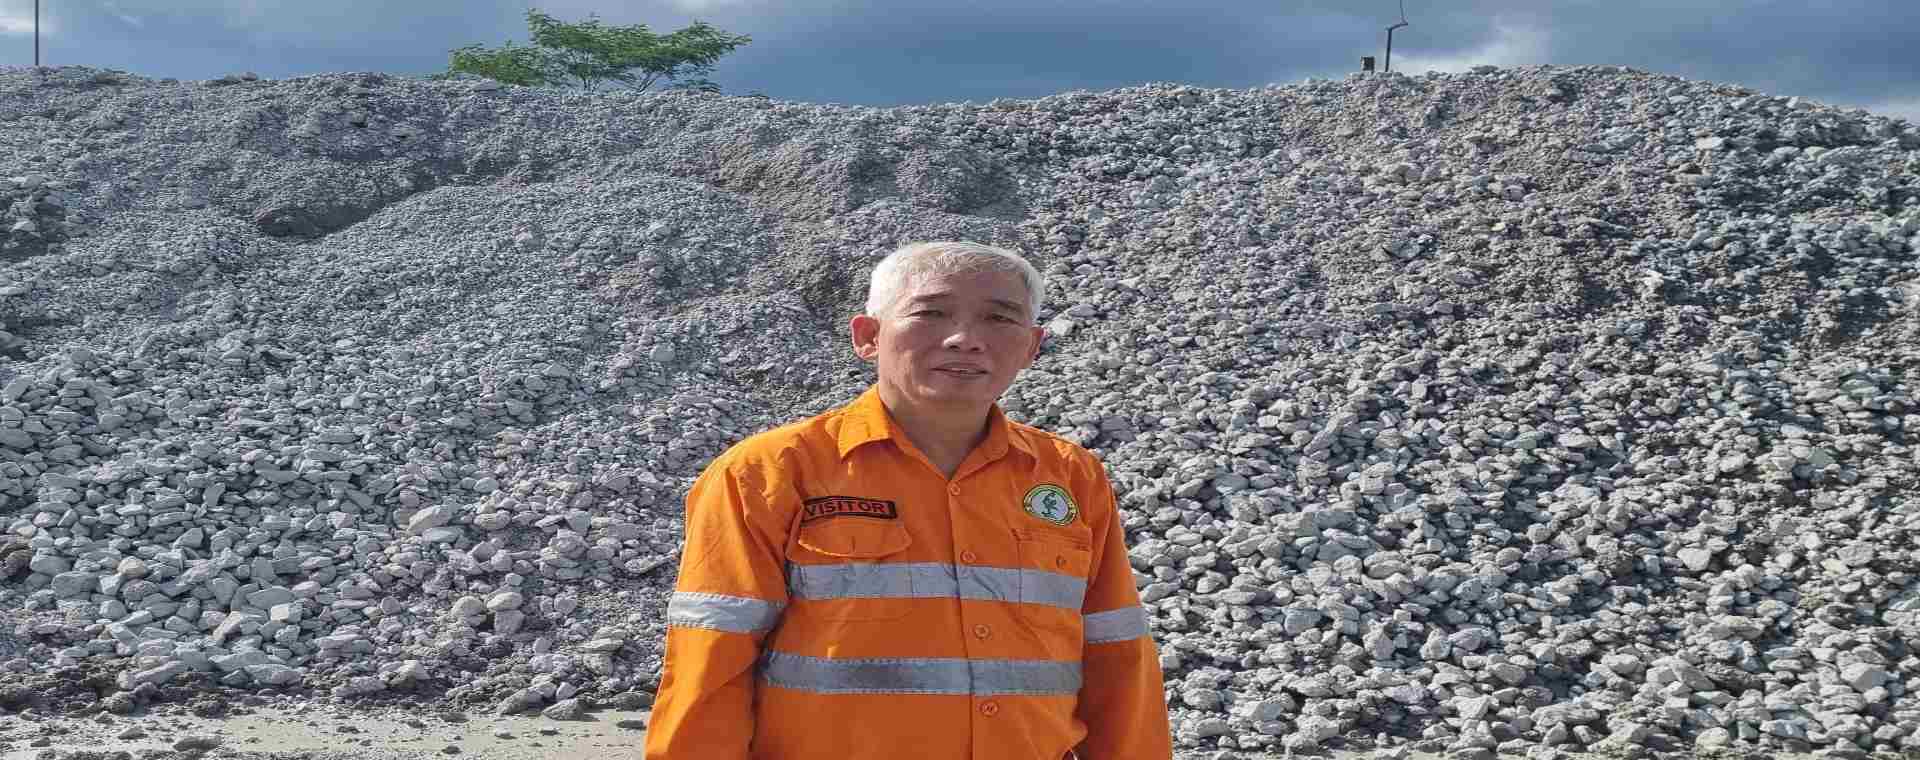 Lo Kheng Hong berfoto di depan batuan emas yang akan dihaluskan dan dibakar menjadi emas di Gosowong Gold Mine 15 Maret 2022. - Istimewa